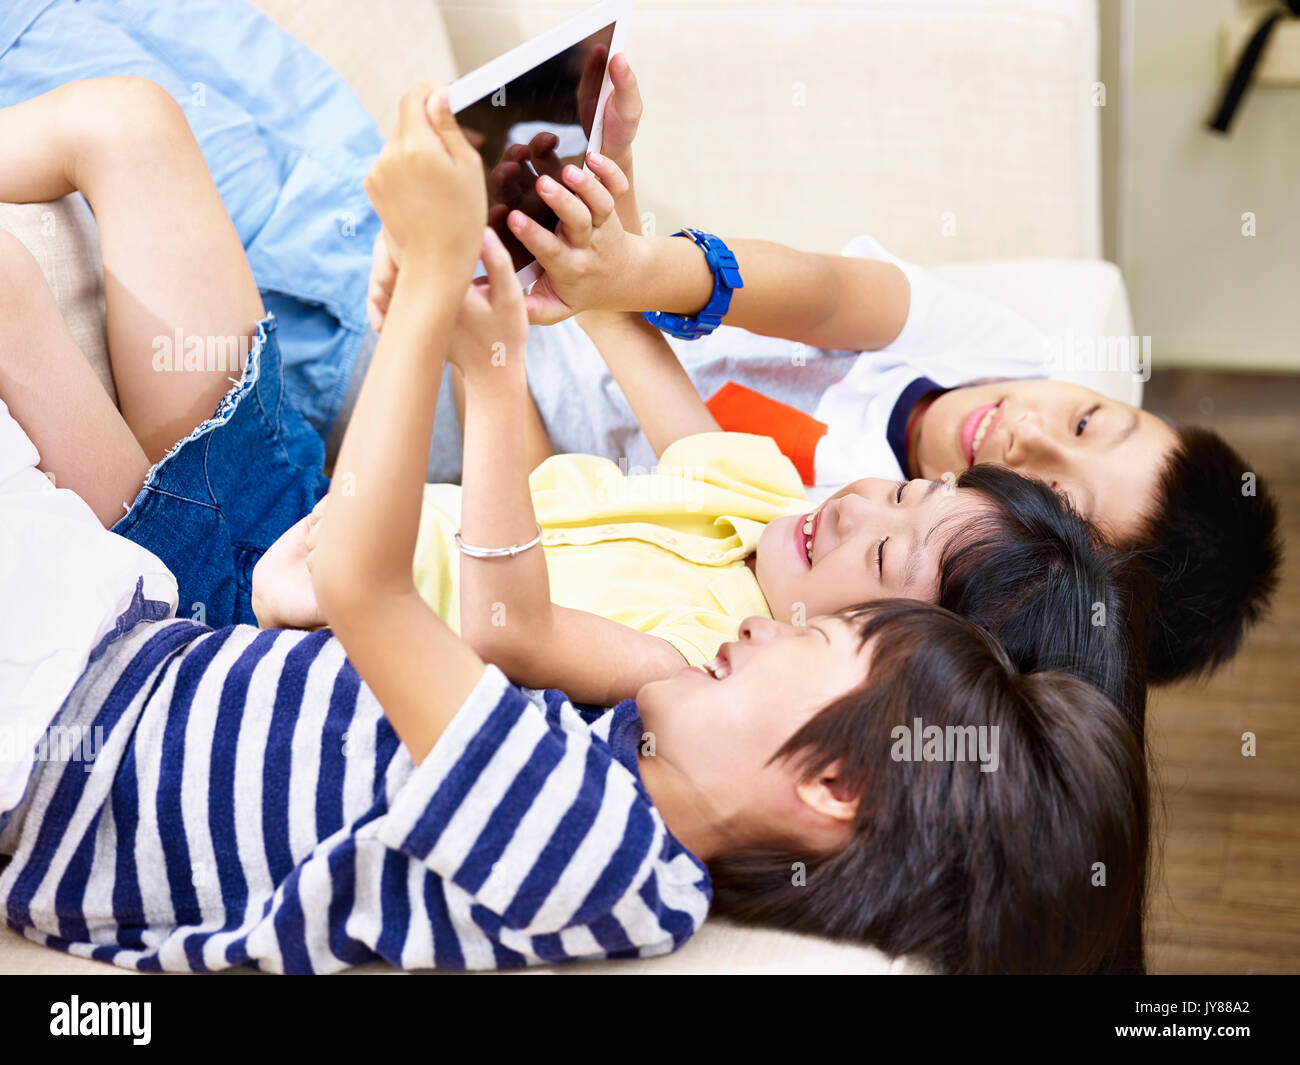 Trois enfants d'asie se trouvant sur la table accueil playing video game using digital tablet. Banque D'Images